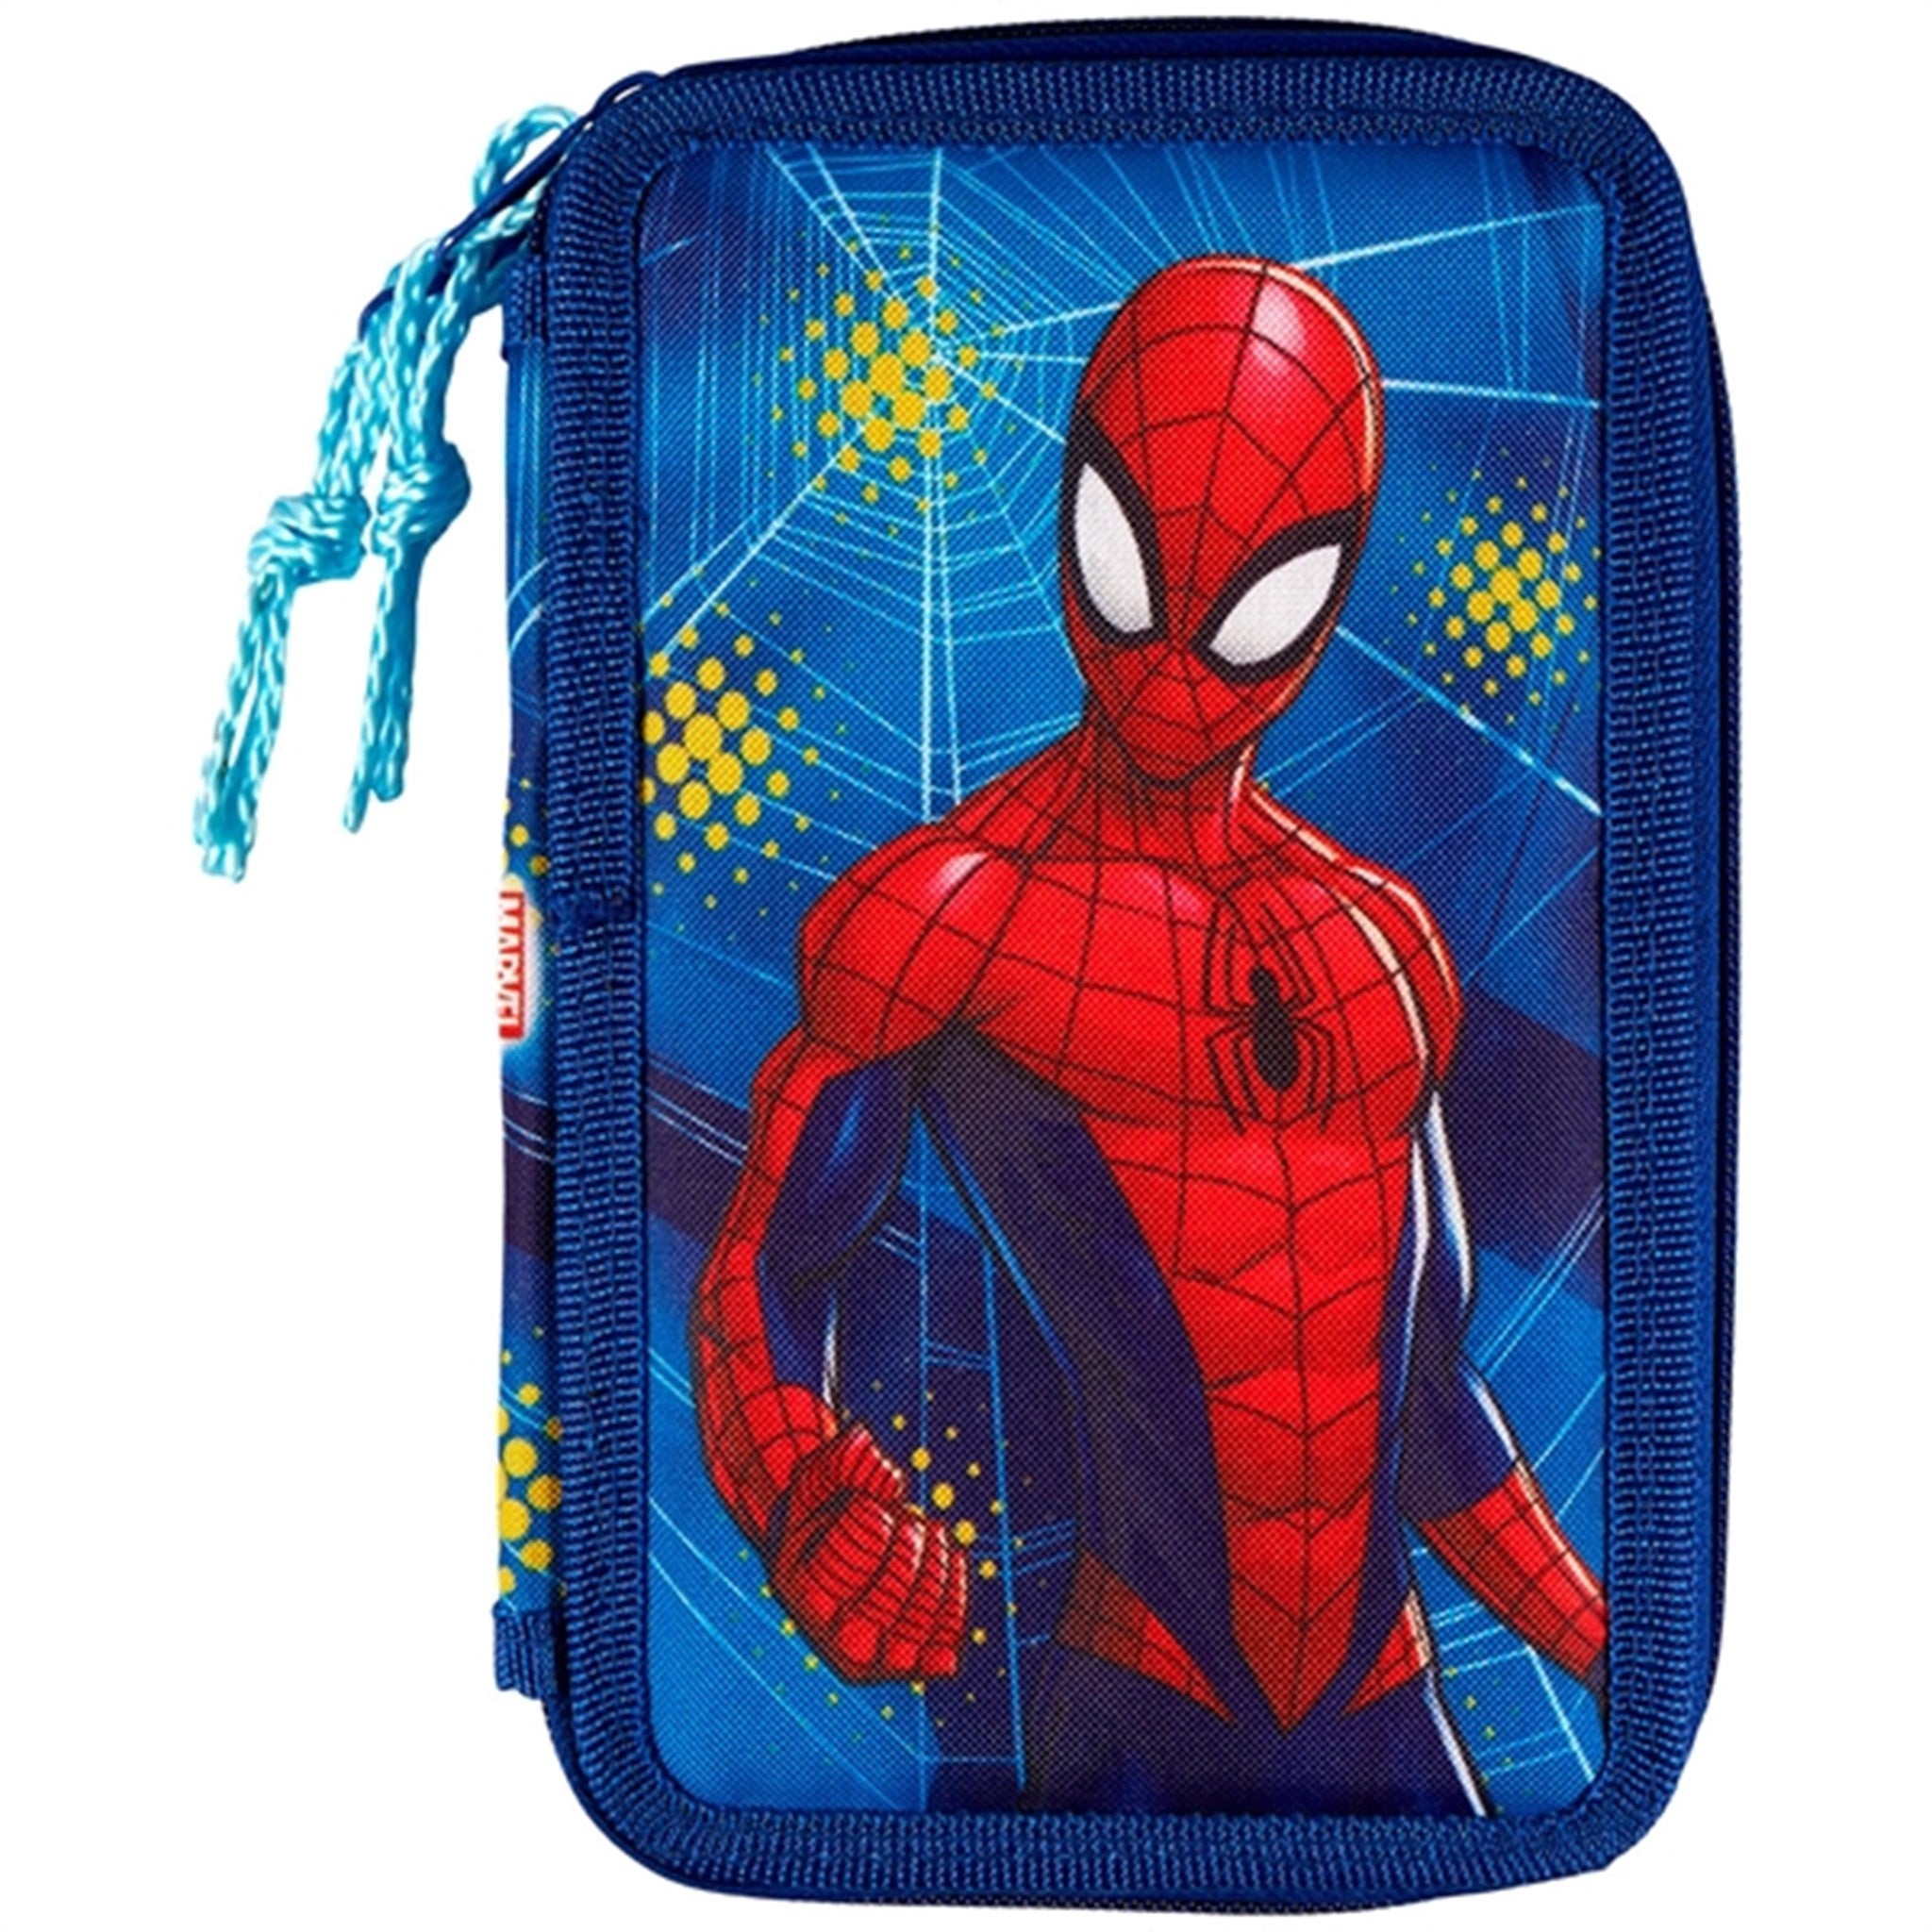 Euromic Spider-Man Pencil Case